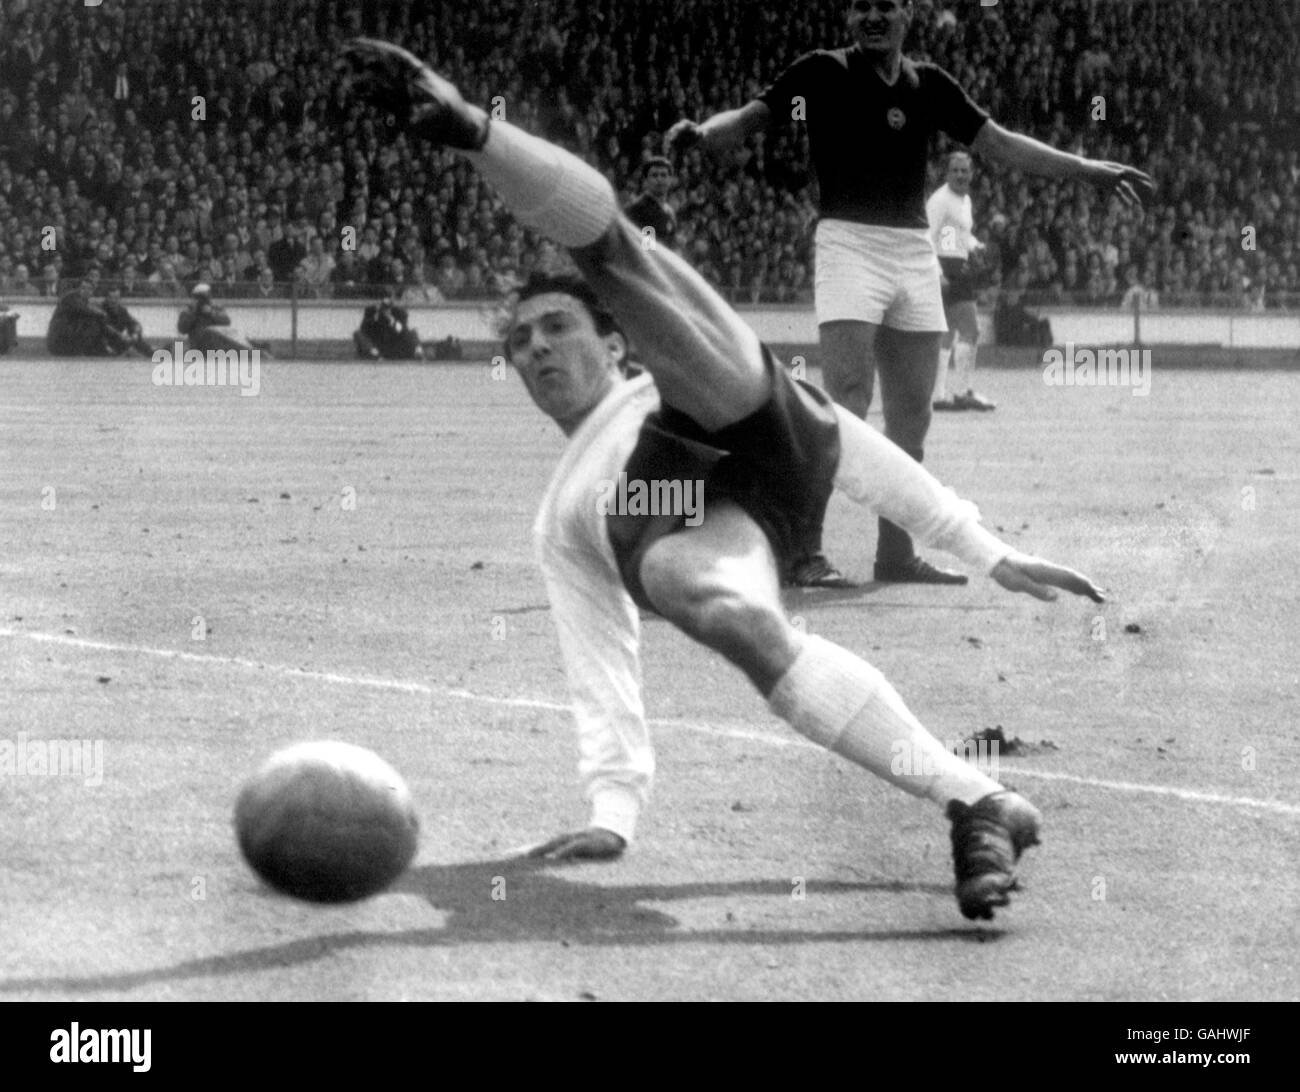 Englands Jimmy Greaves verpasst den Ball völlig, als er versucht Ein spektakulärer Scheren-Kick Stockfoto